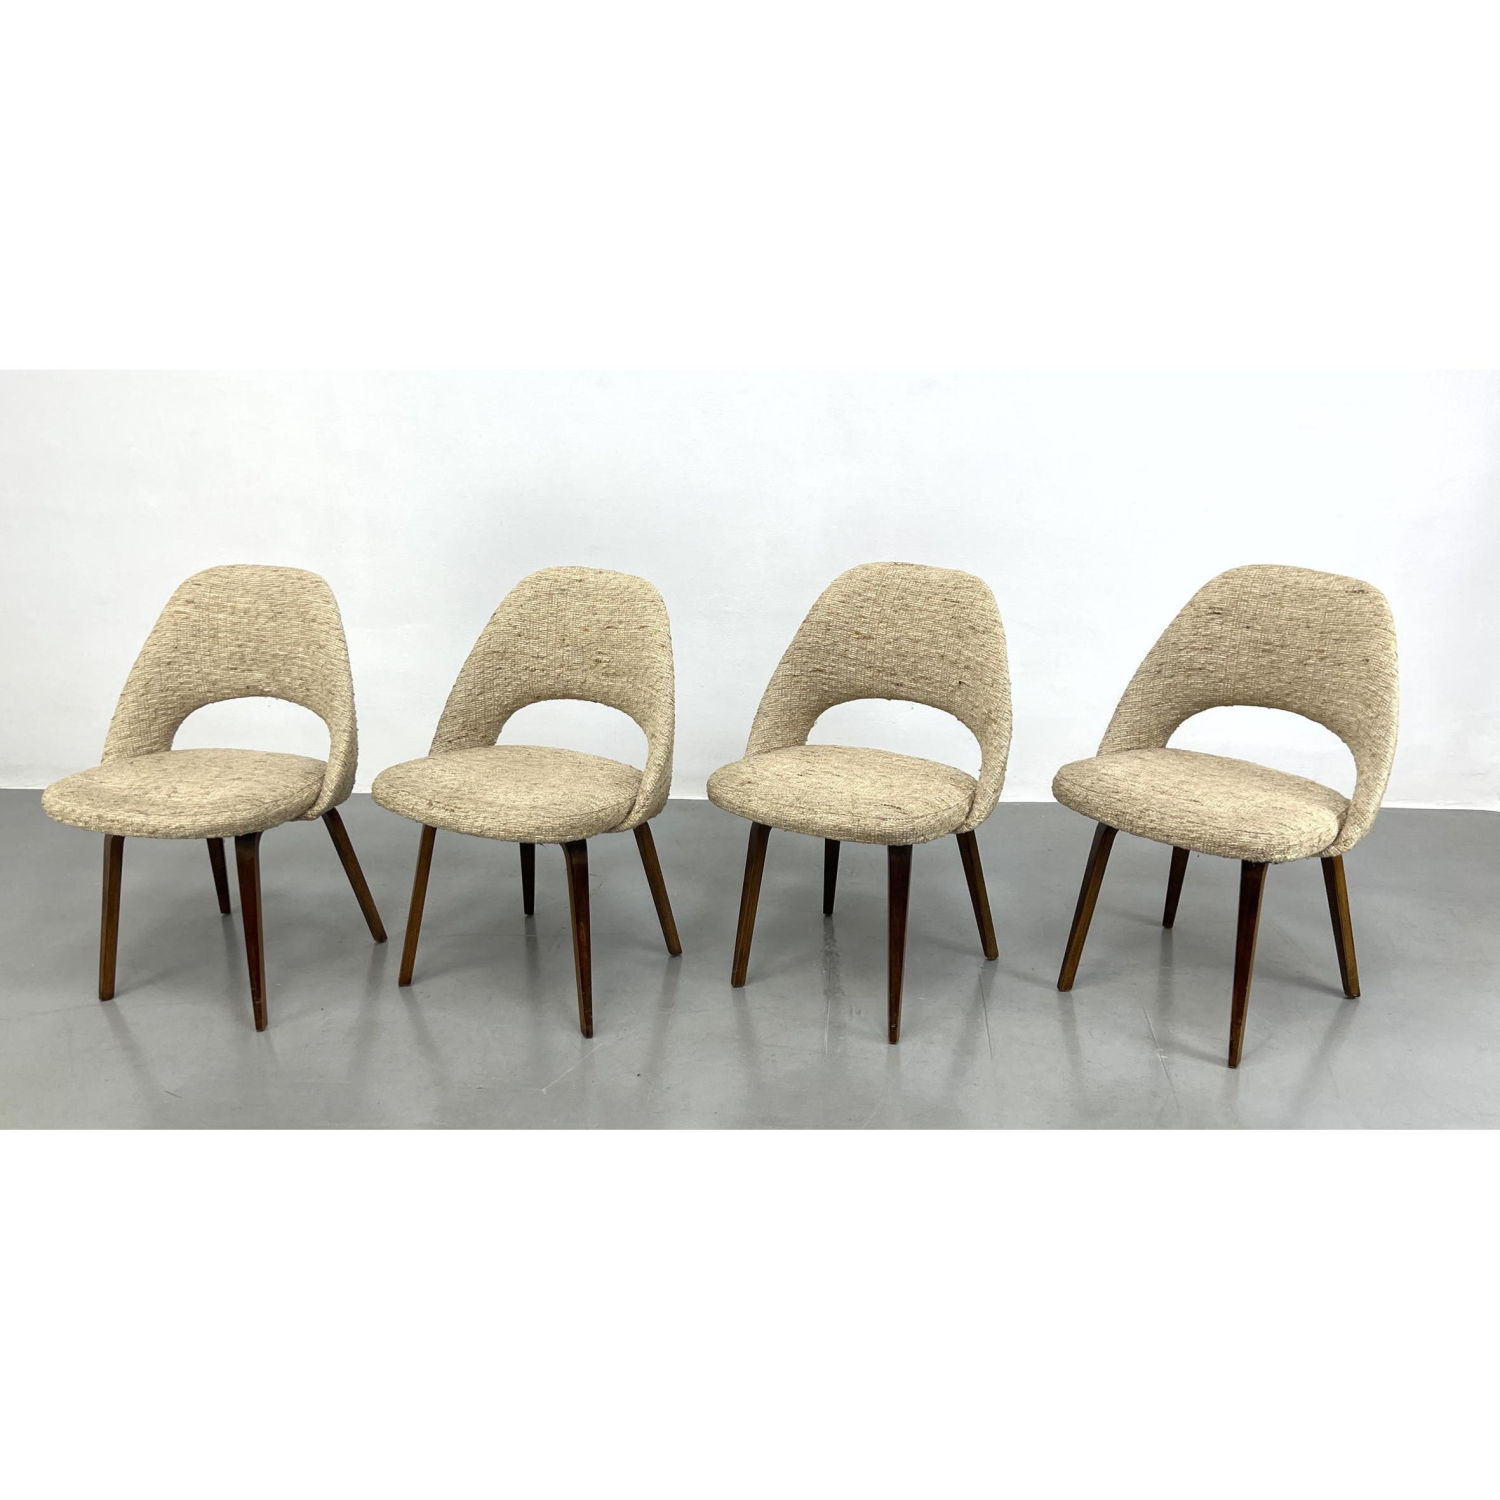 Set 4 Eero Saarinen Dining Chairs.